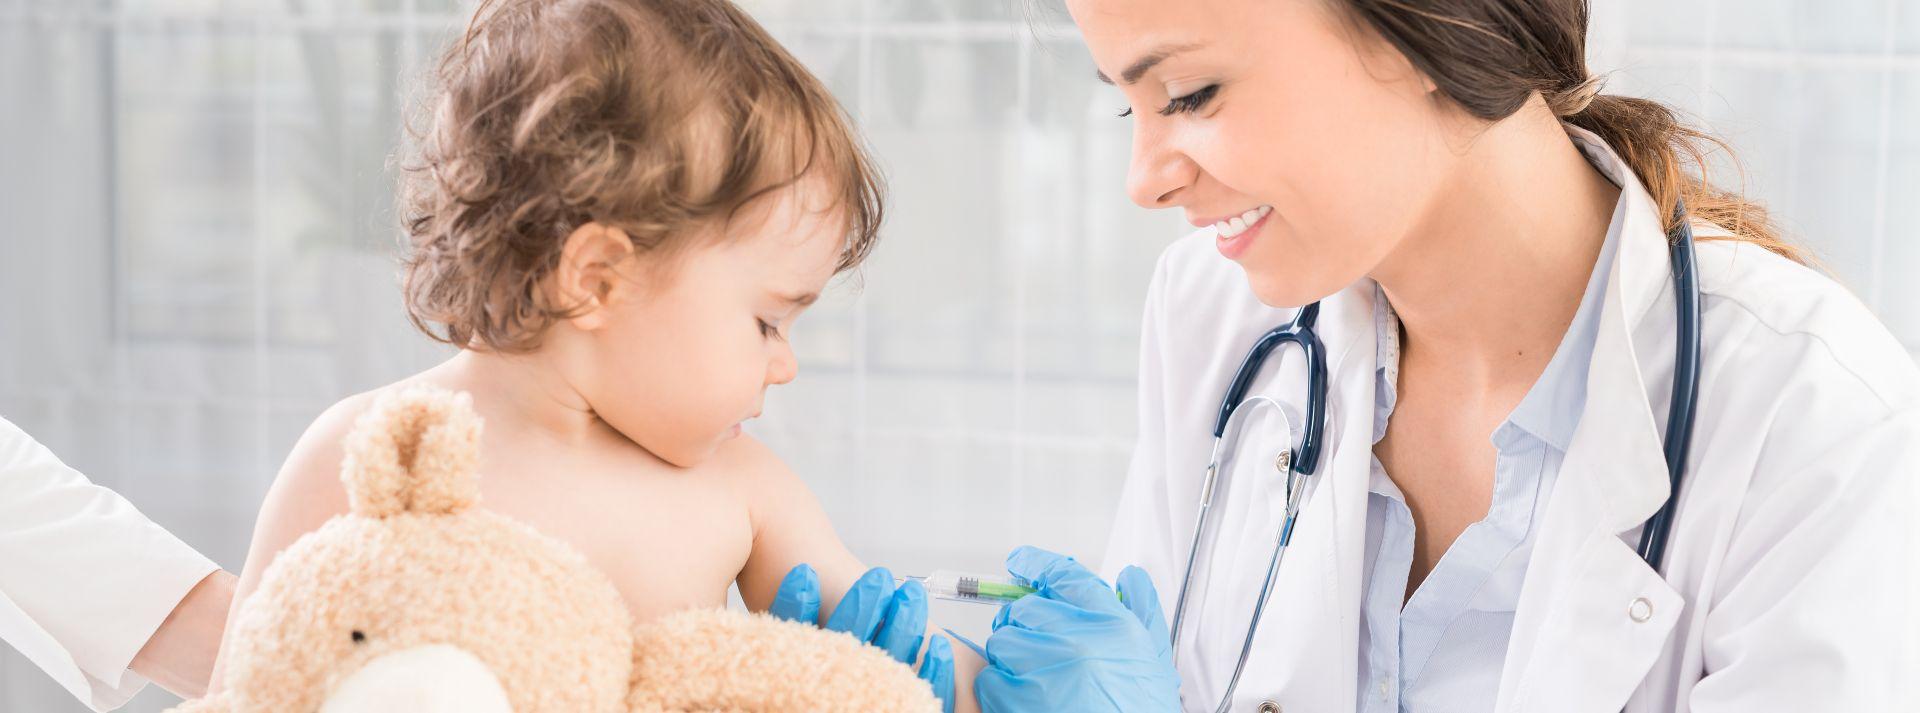 Kinderarzt der jungen Frau führt eine Impfung eines kleinen Mädchens durch. Das Mädchen hält ein Maskottchen.